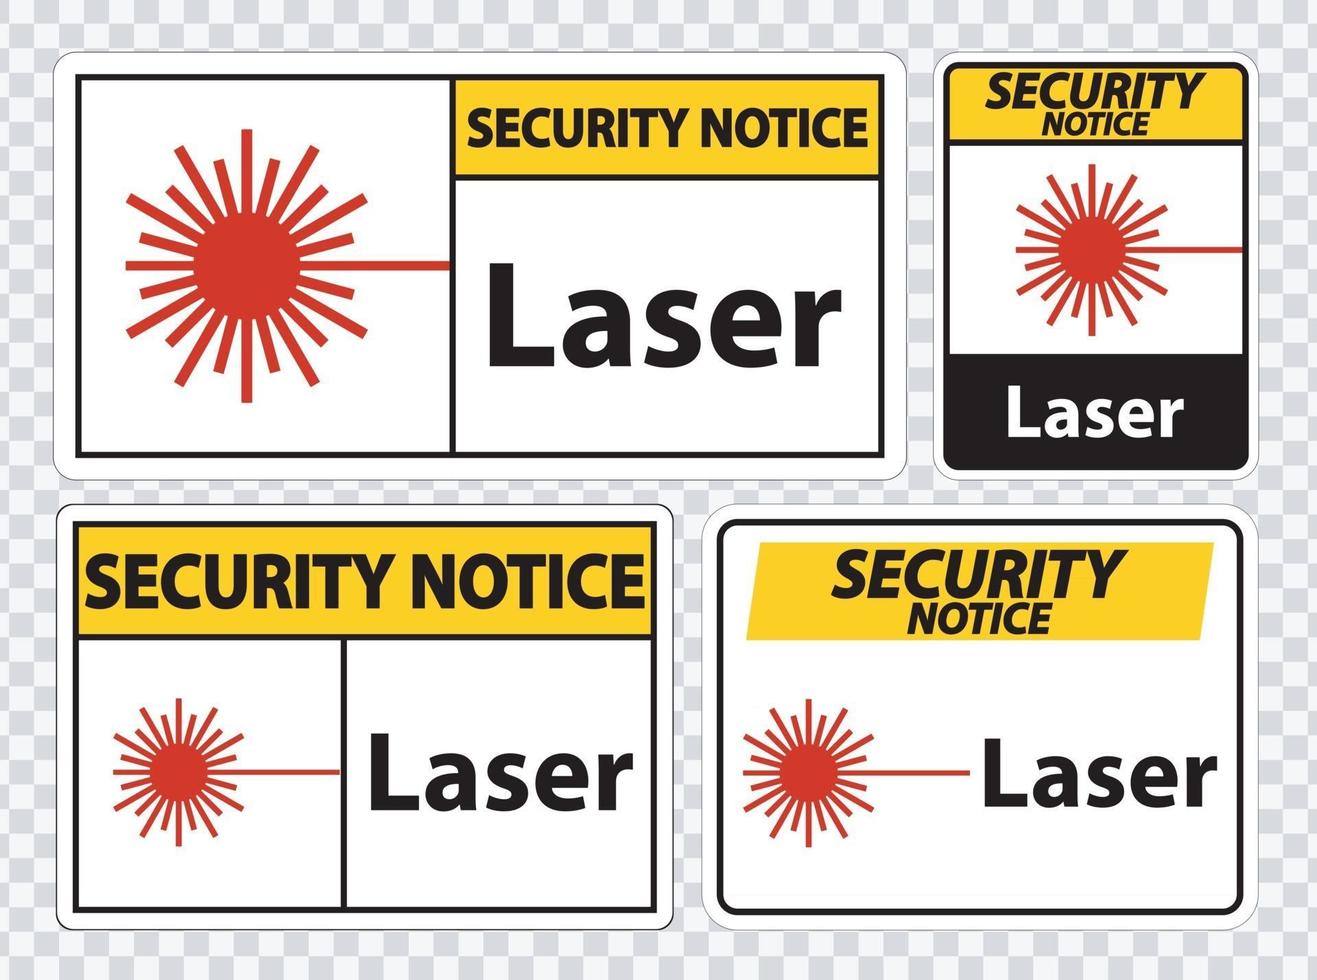 säkerhetsmeddelande laser symbol tecken symbol tecken isolera på transparent bakgrund, vektorillustration vektor